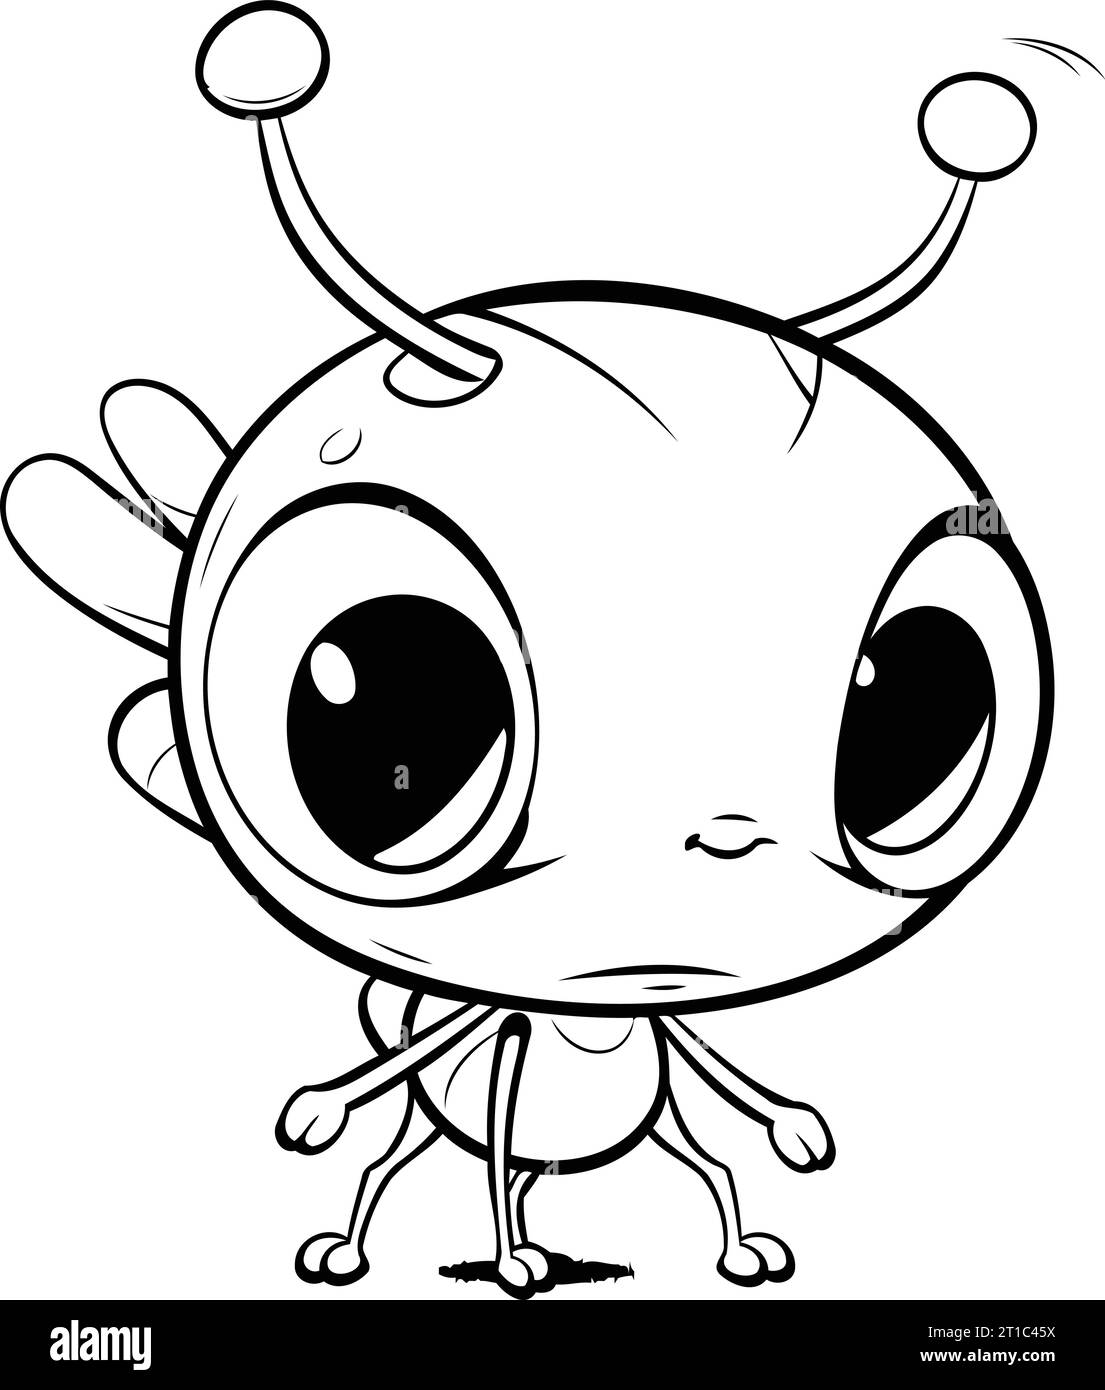 Schwarz-weiß-Zeichentrickillustration des lustigen Alien-Insekten-Charakters für Malbuch Stock Vektor